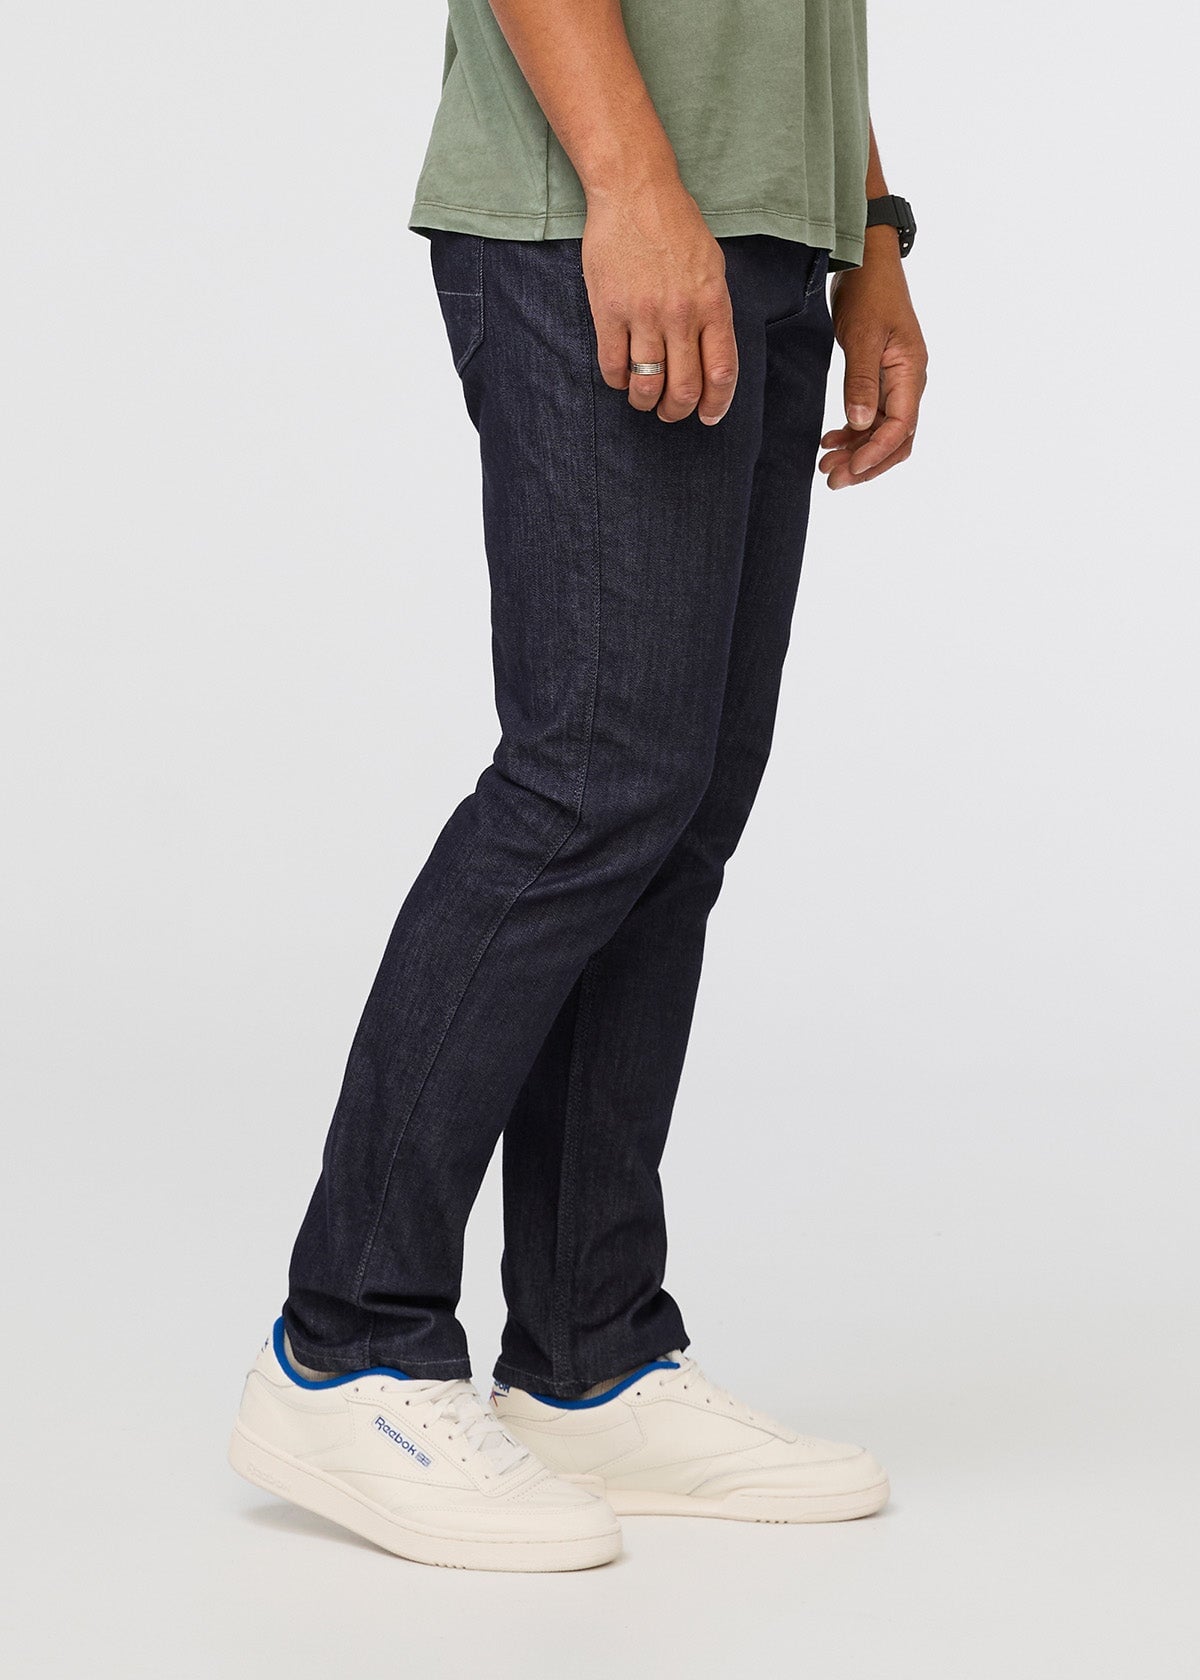 Men's Relaxed Fit Jeans - Denim for Men